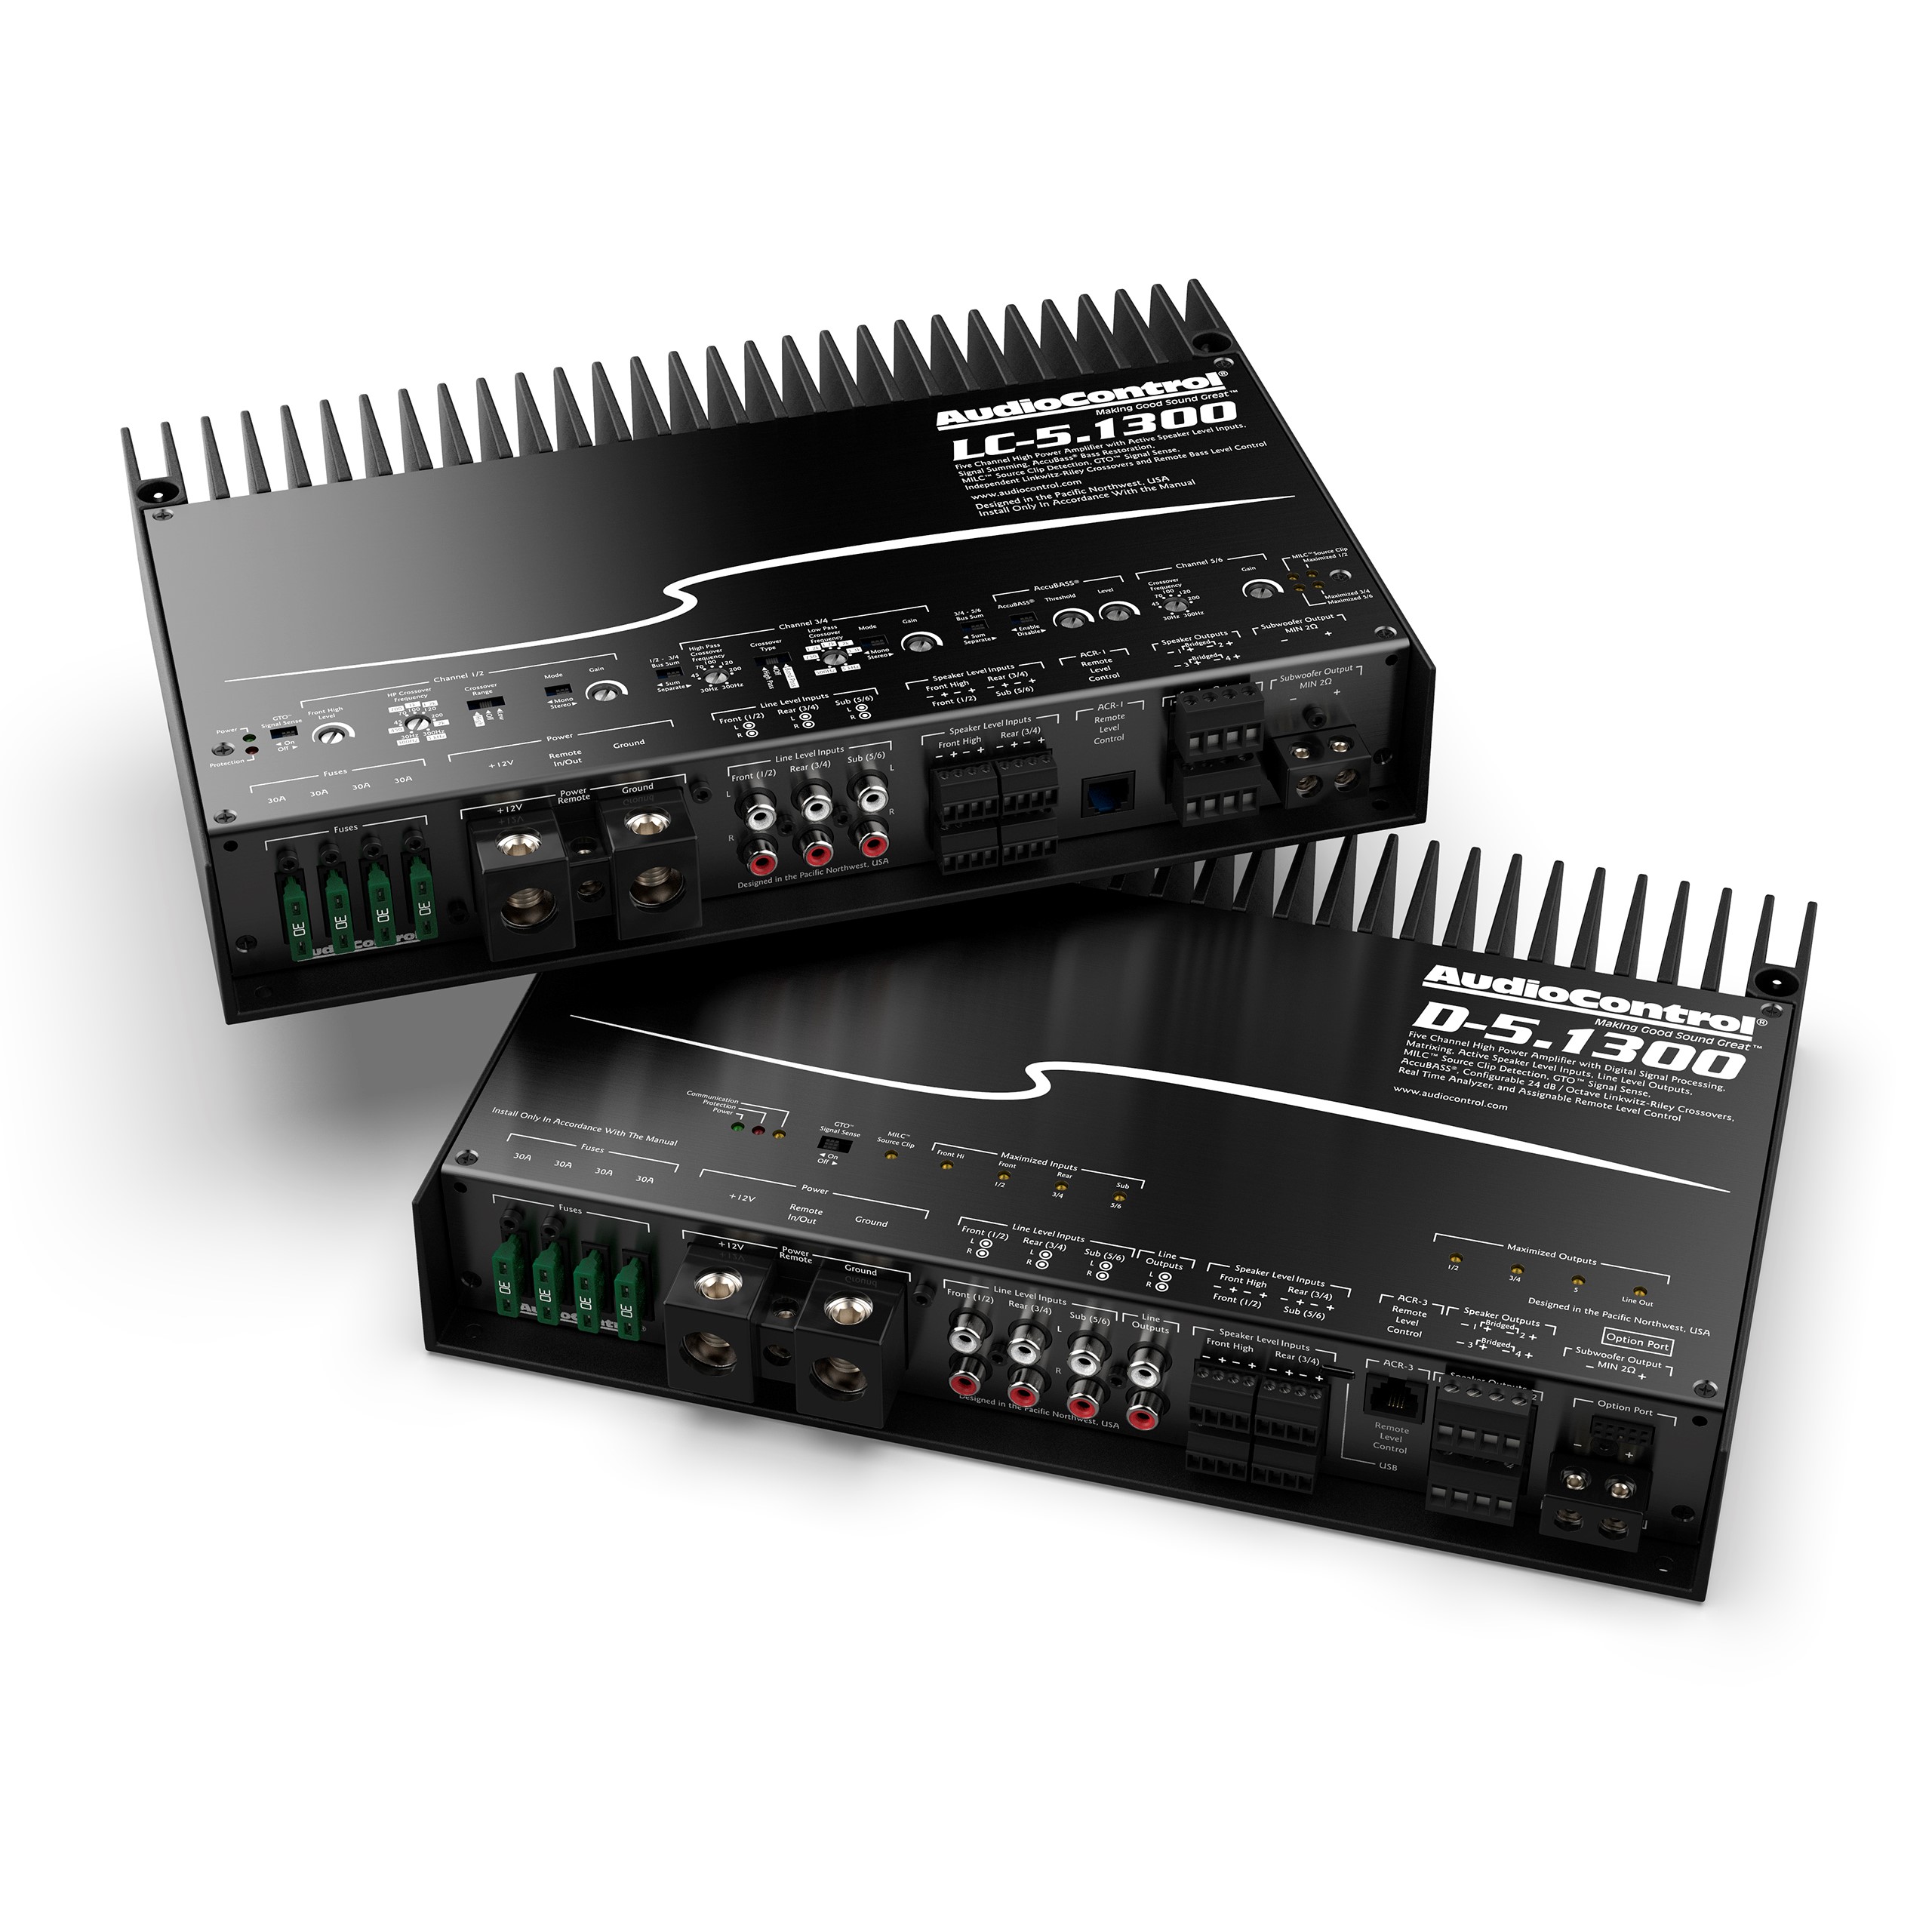 audiocontrol ces 2020 pasmag 5 channel amplifier